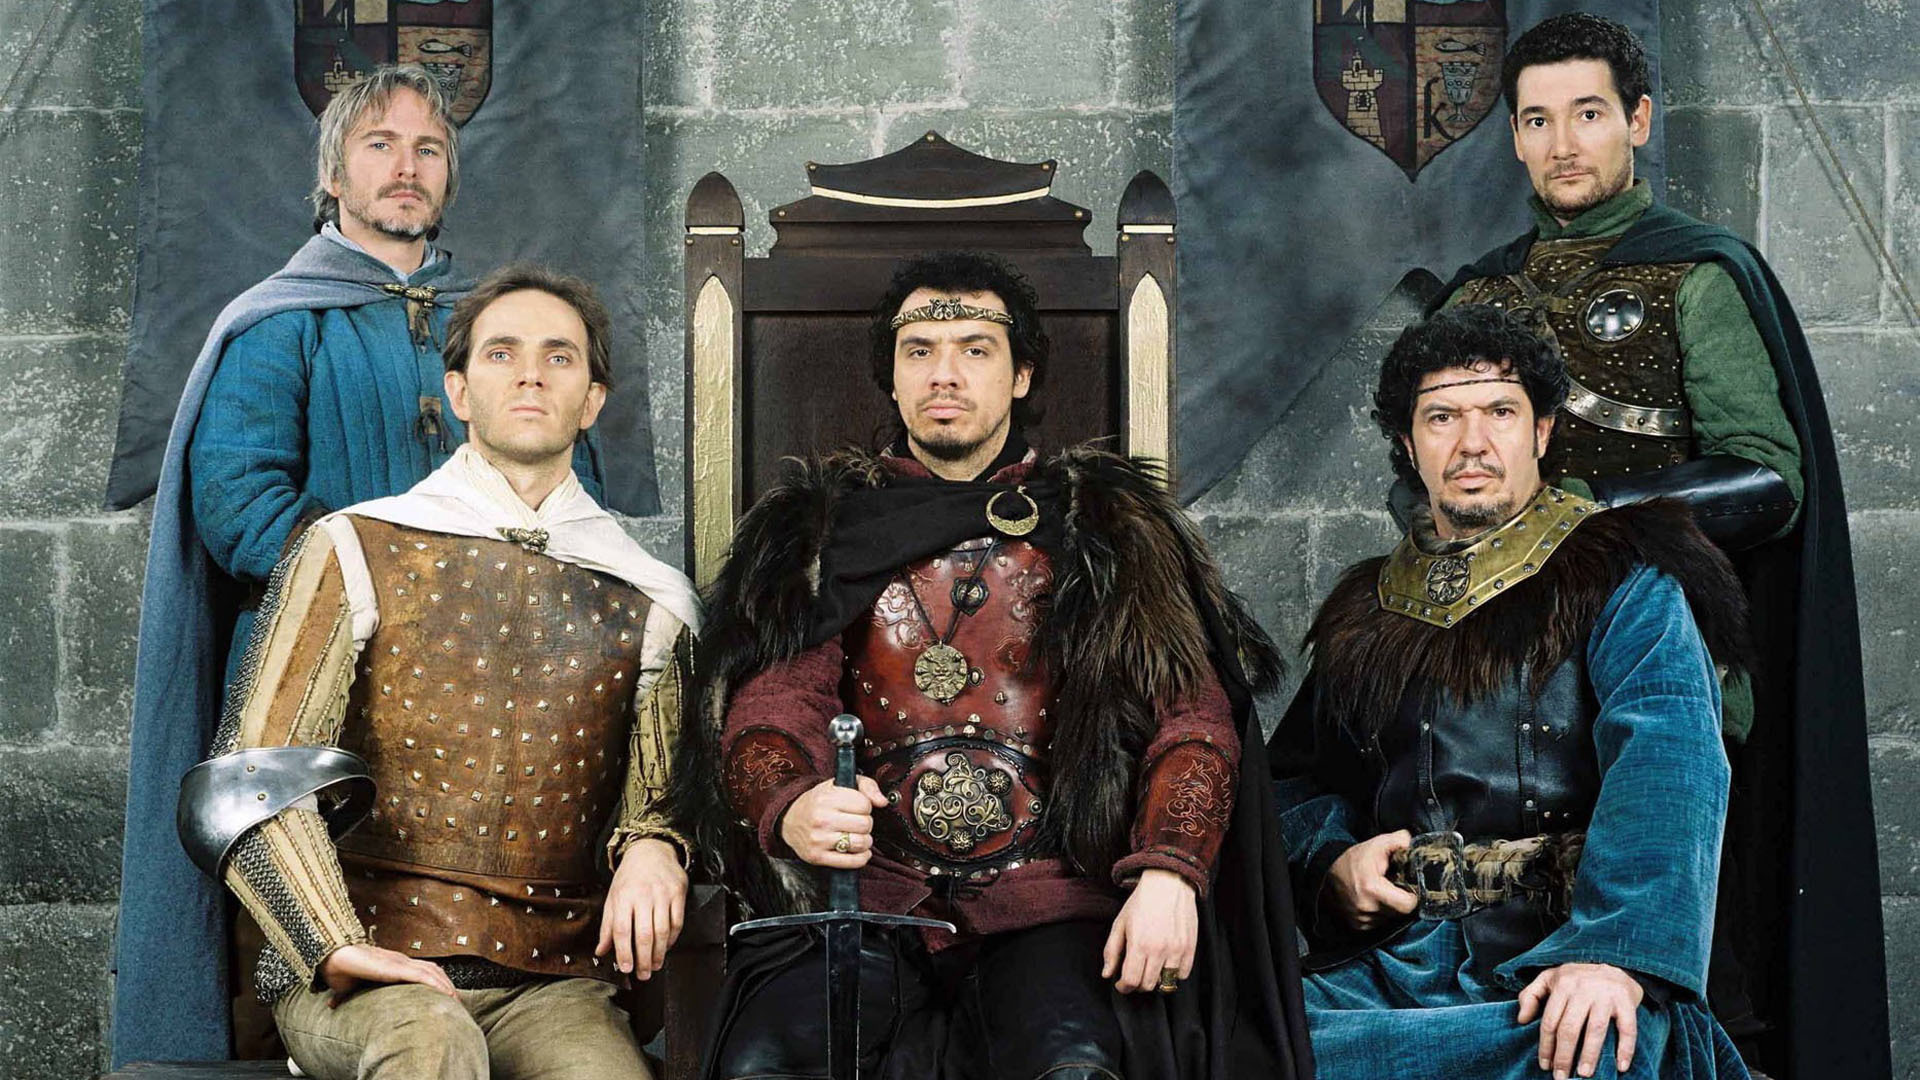 Perceval, Lancelot, Arthur, Léodagan et Bohort débarquent sur grand écran en 2020. Qui sera choisi pour incarner les personnages mythiques de la série?